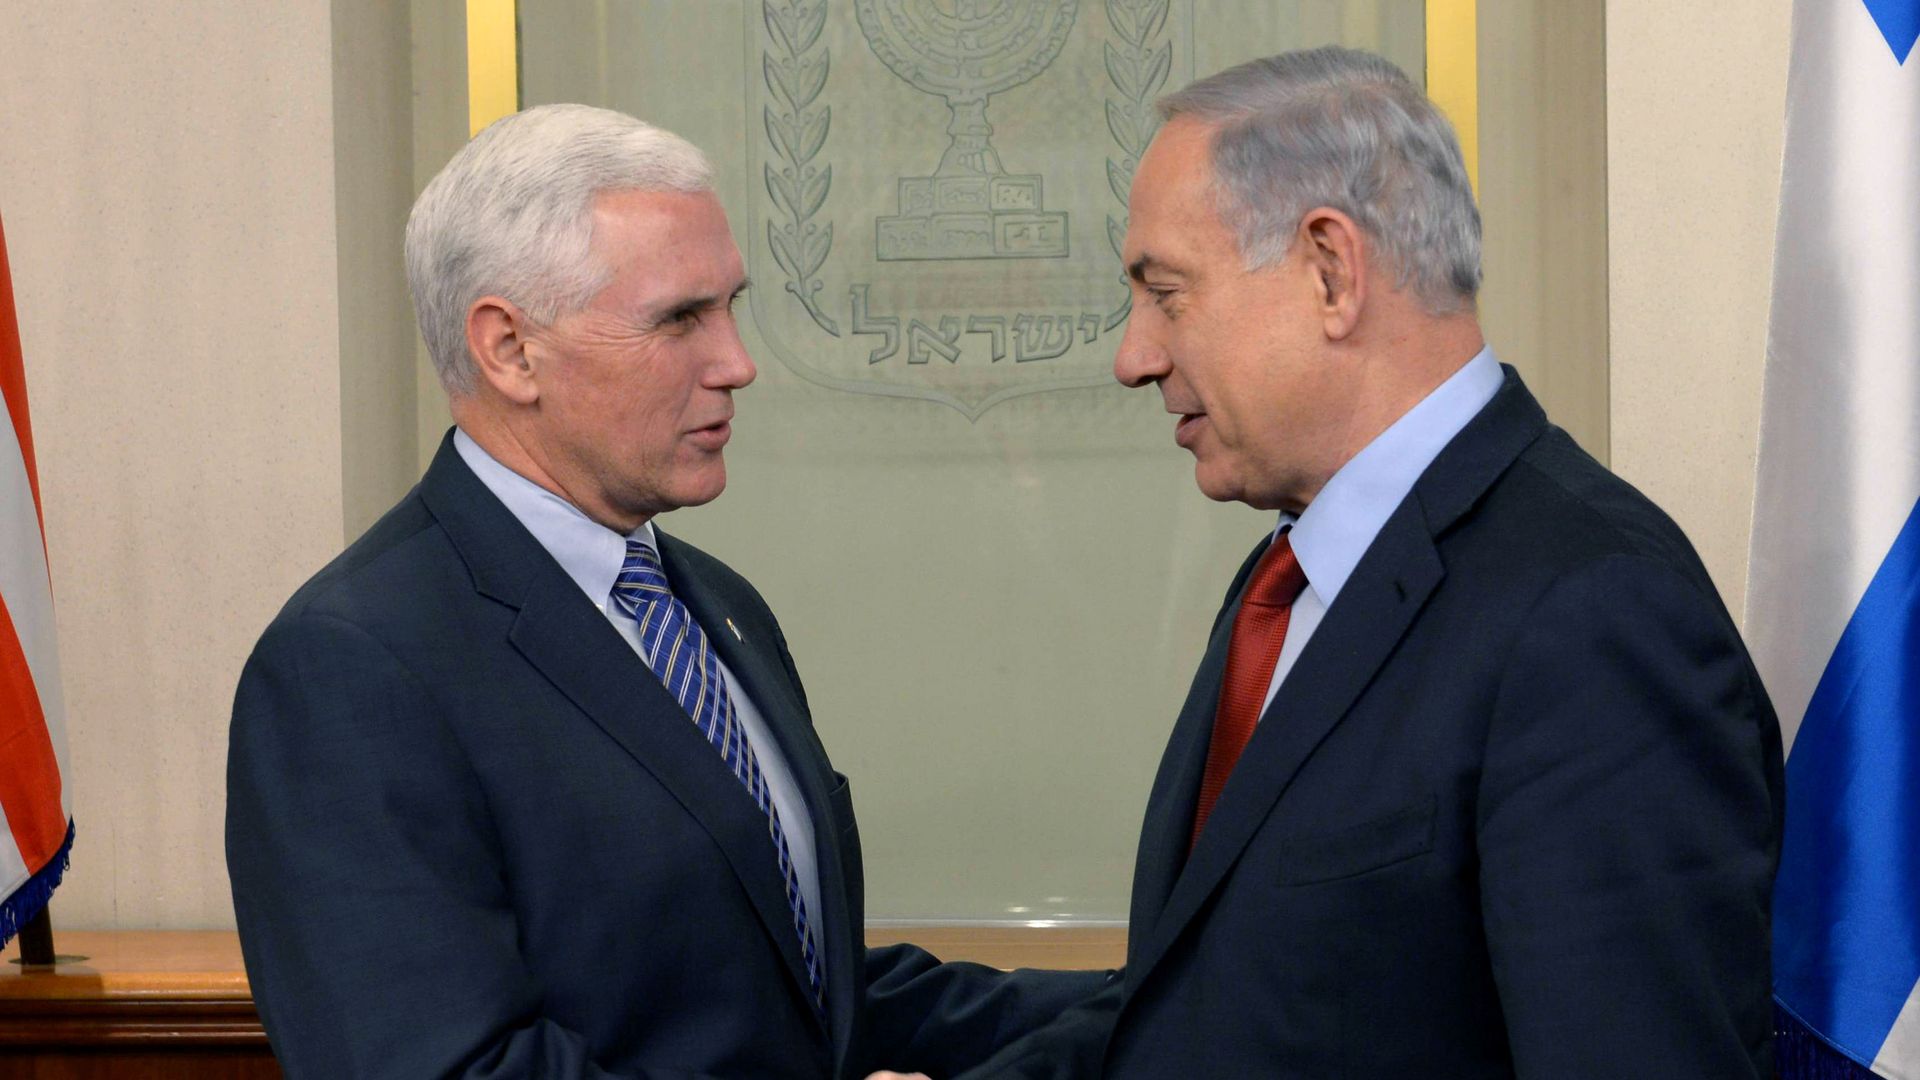 Pence meets Netanyahu